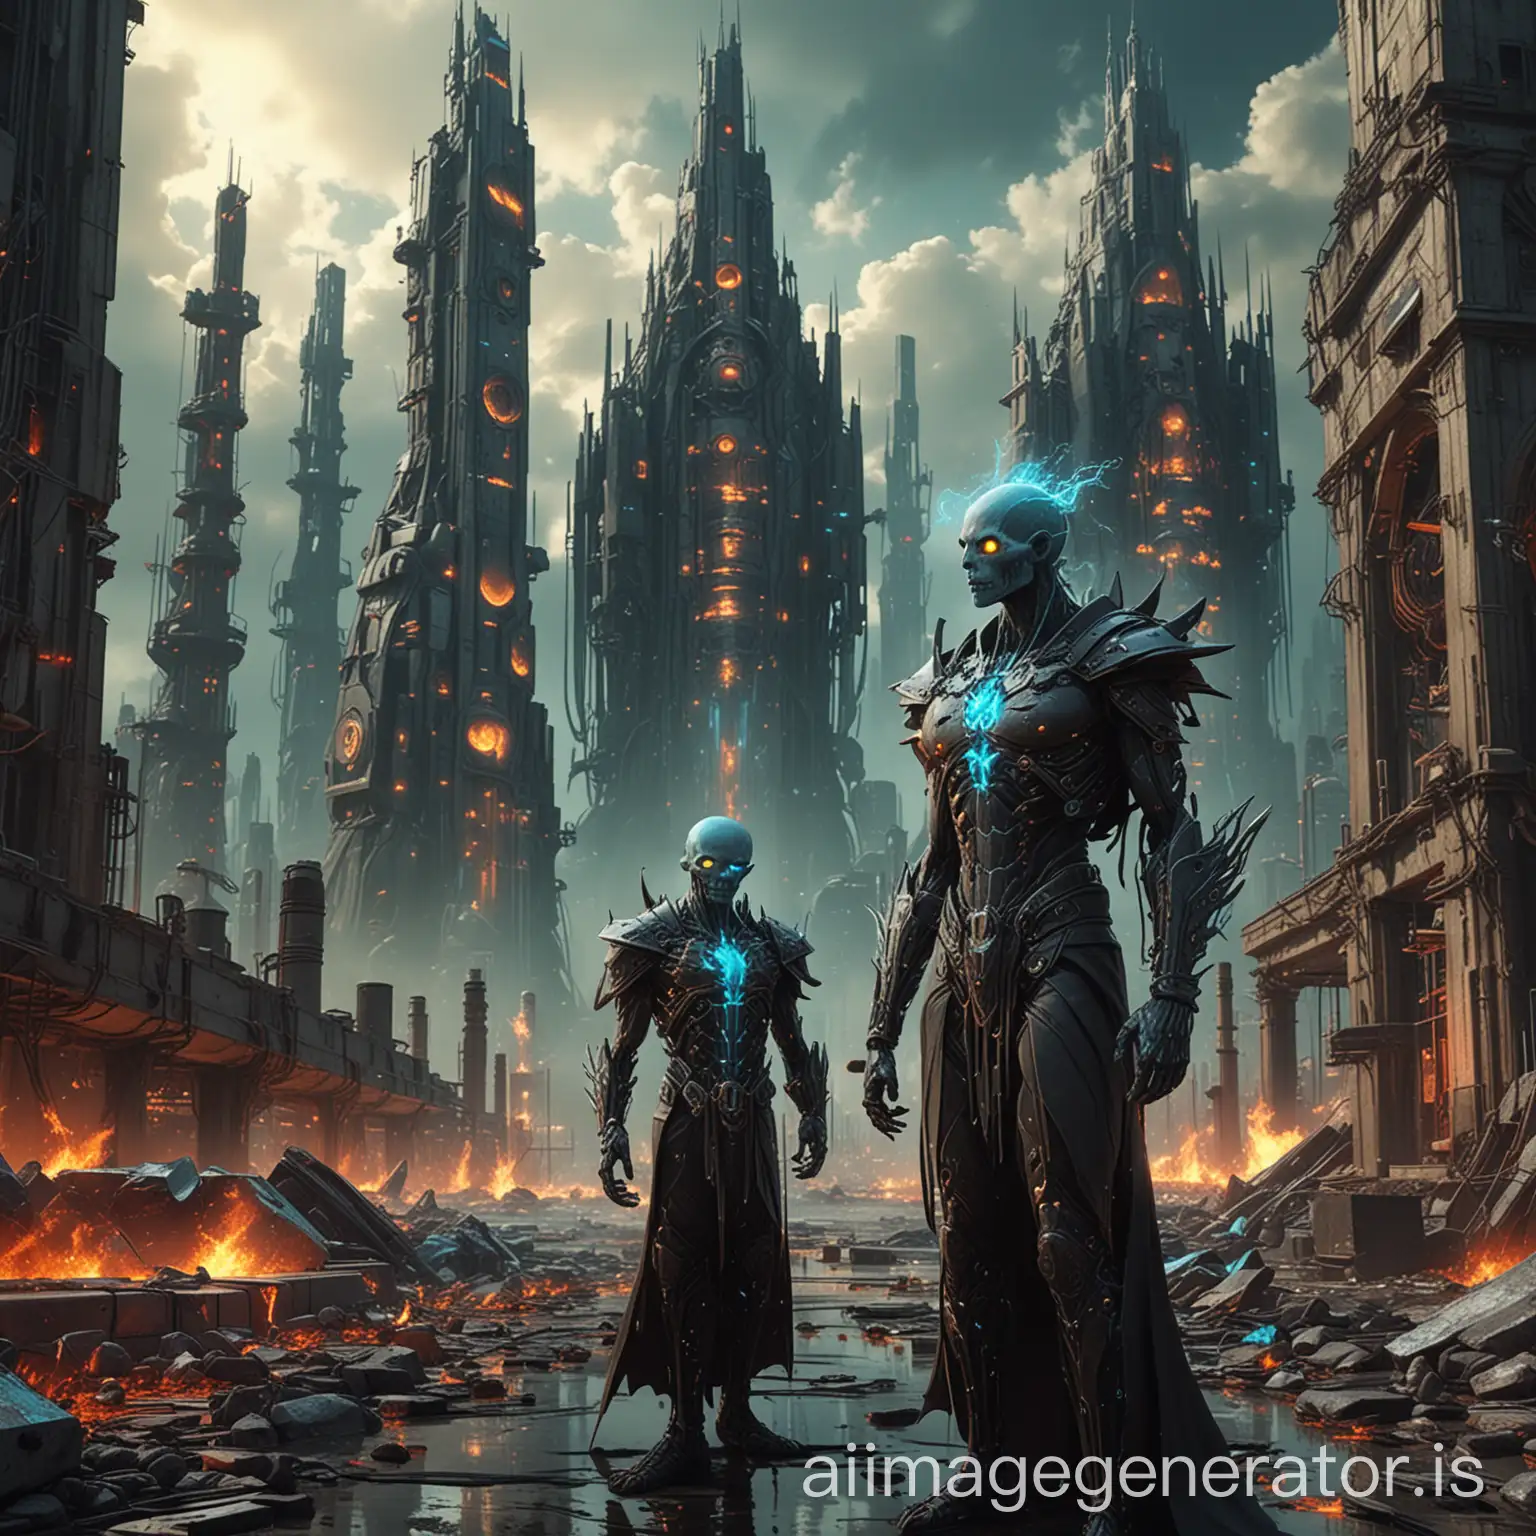 Surreal-Necromancers-Casting-Aqua-and-Neon-Energy-in-Futuristic-Cityscape